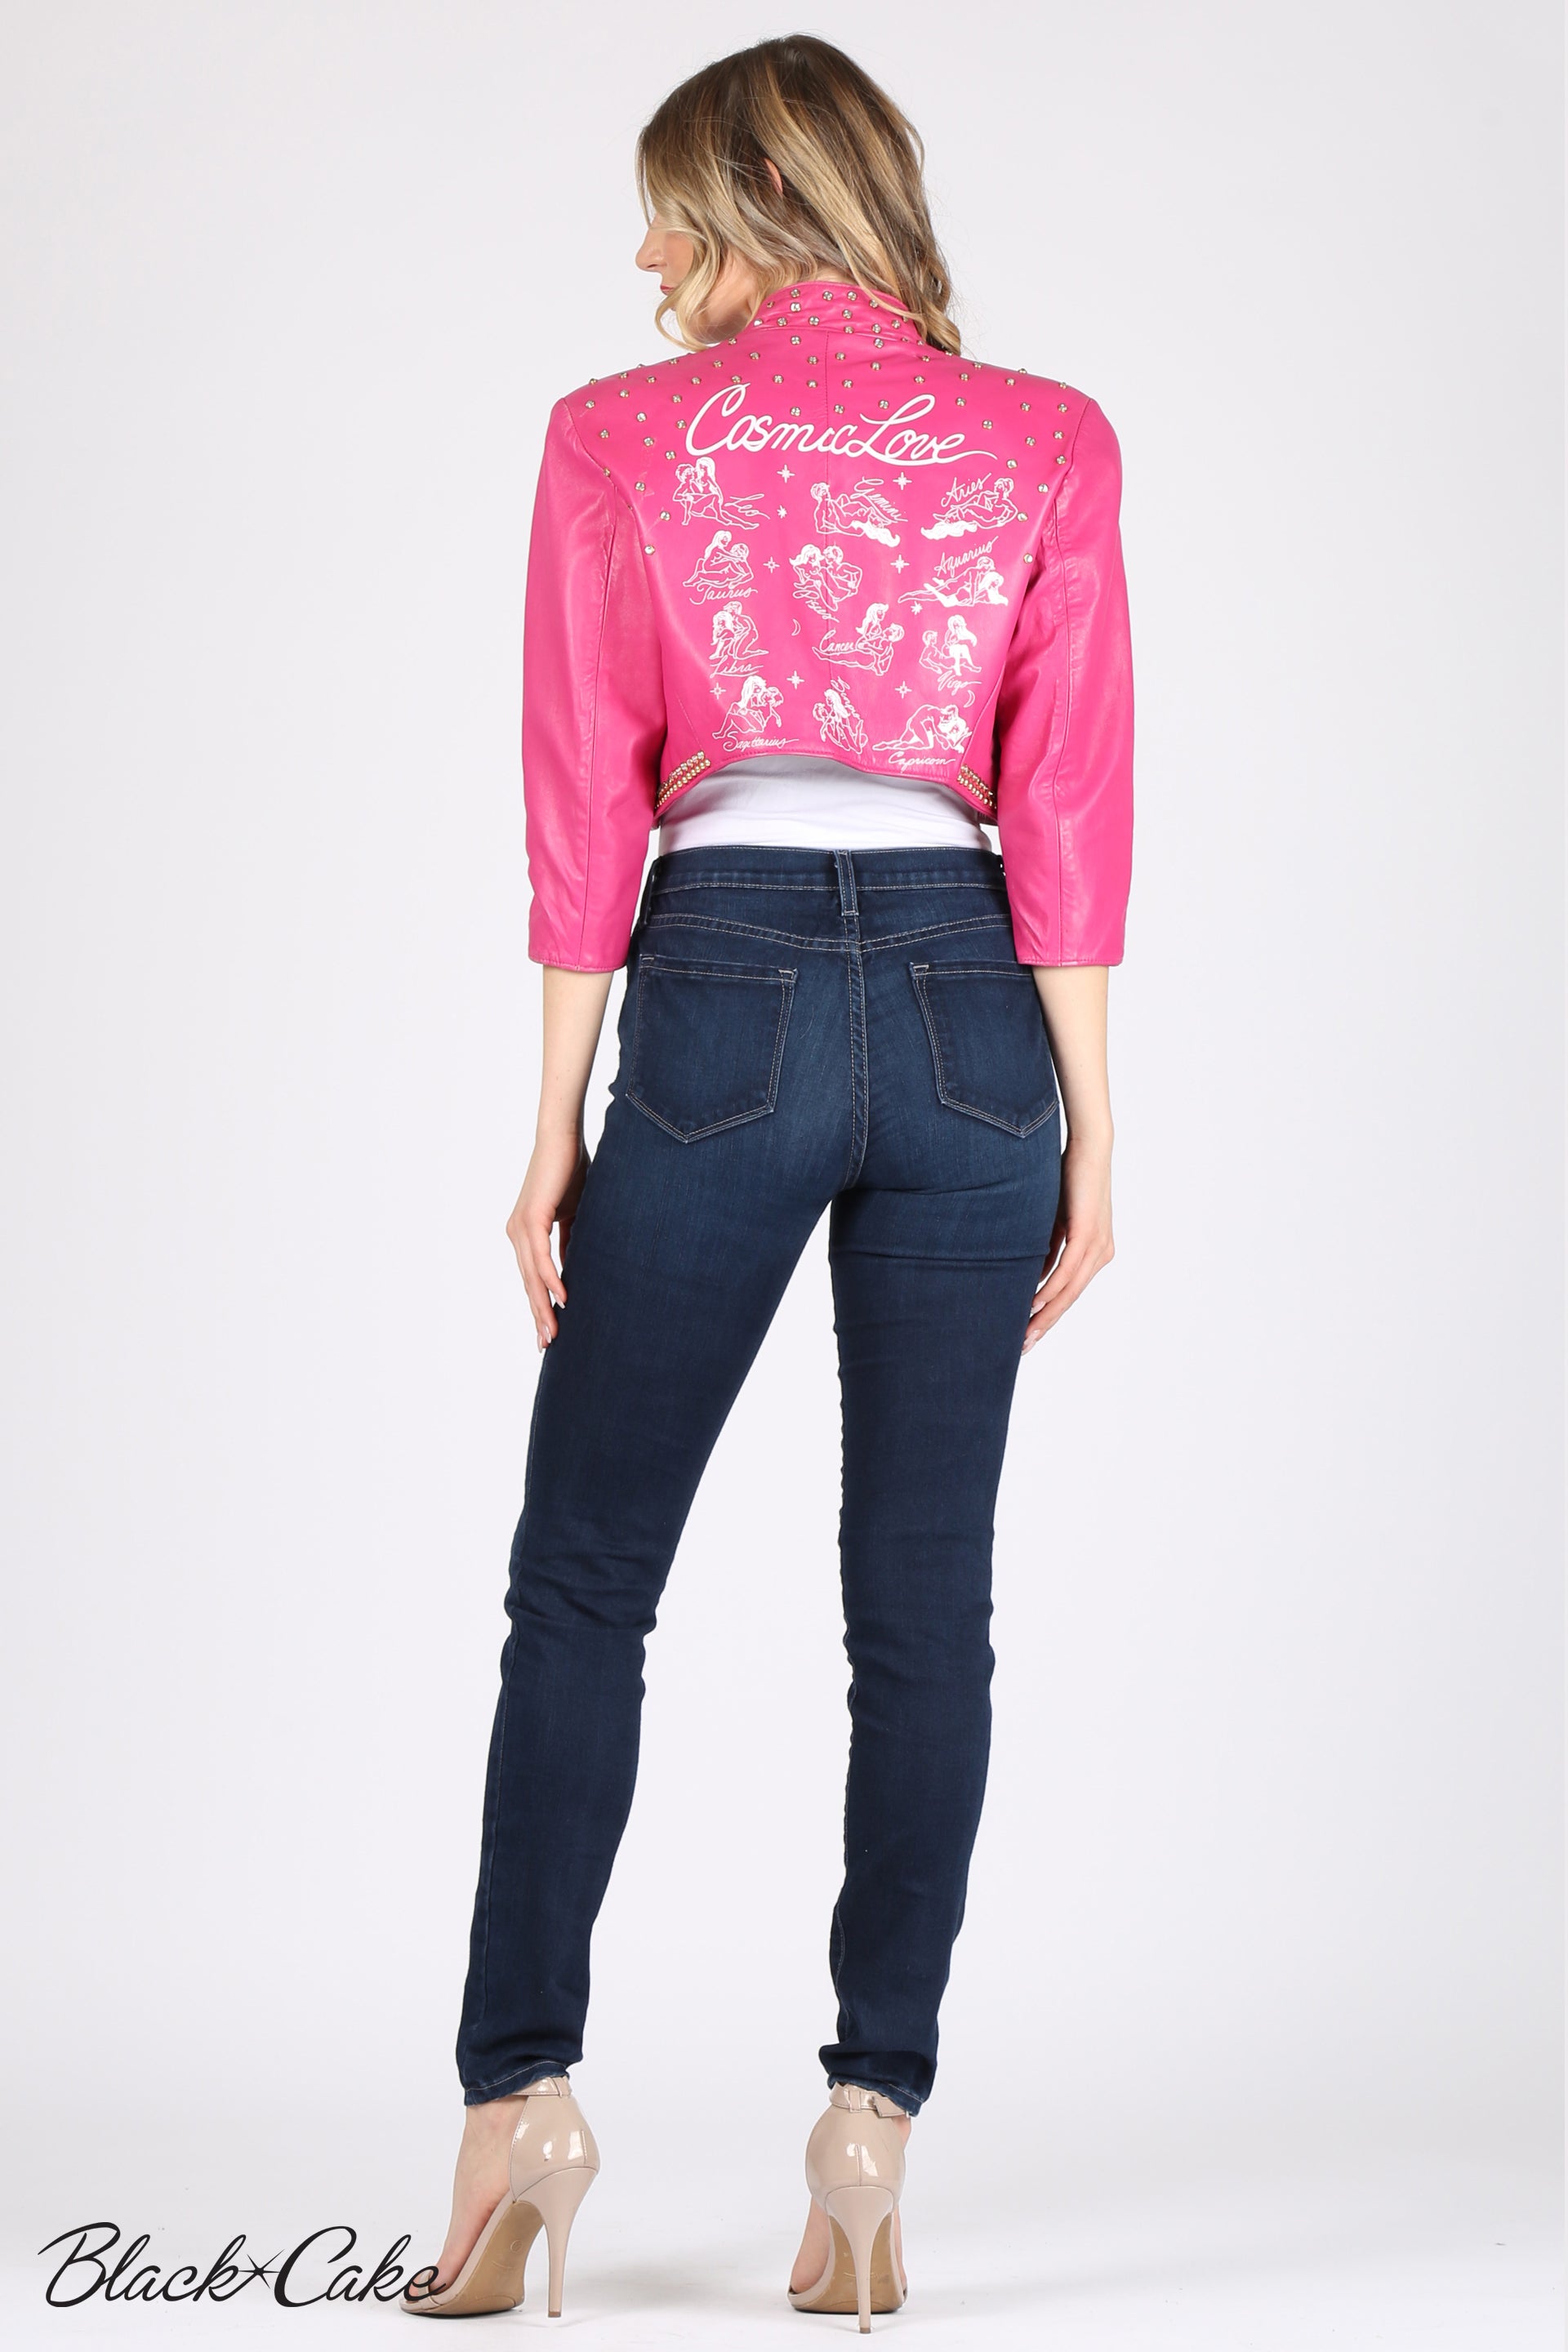 Risk Taker Embellished Jean Jacket- Pink – The Pulse Boutique